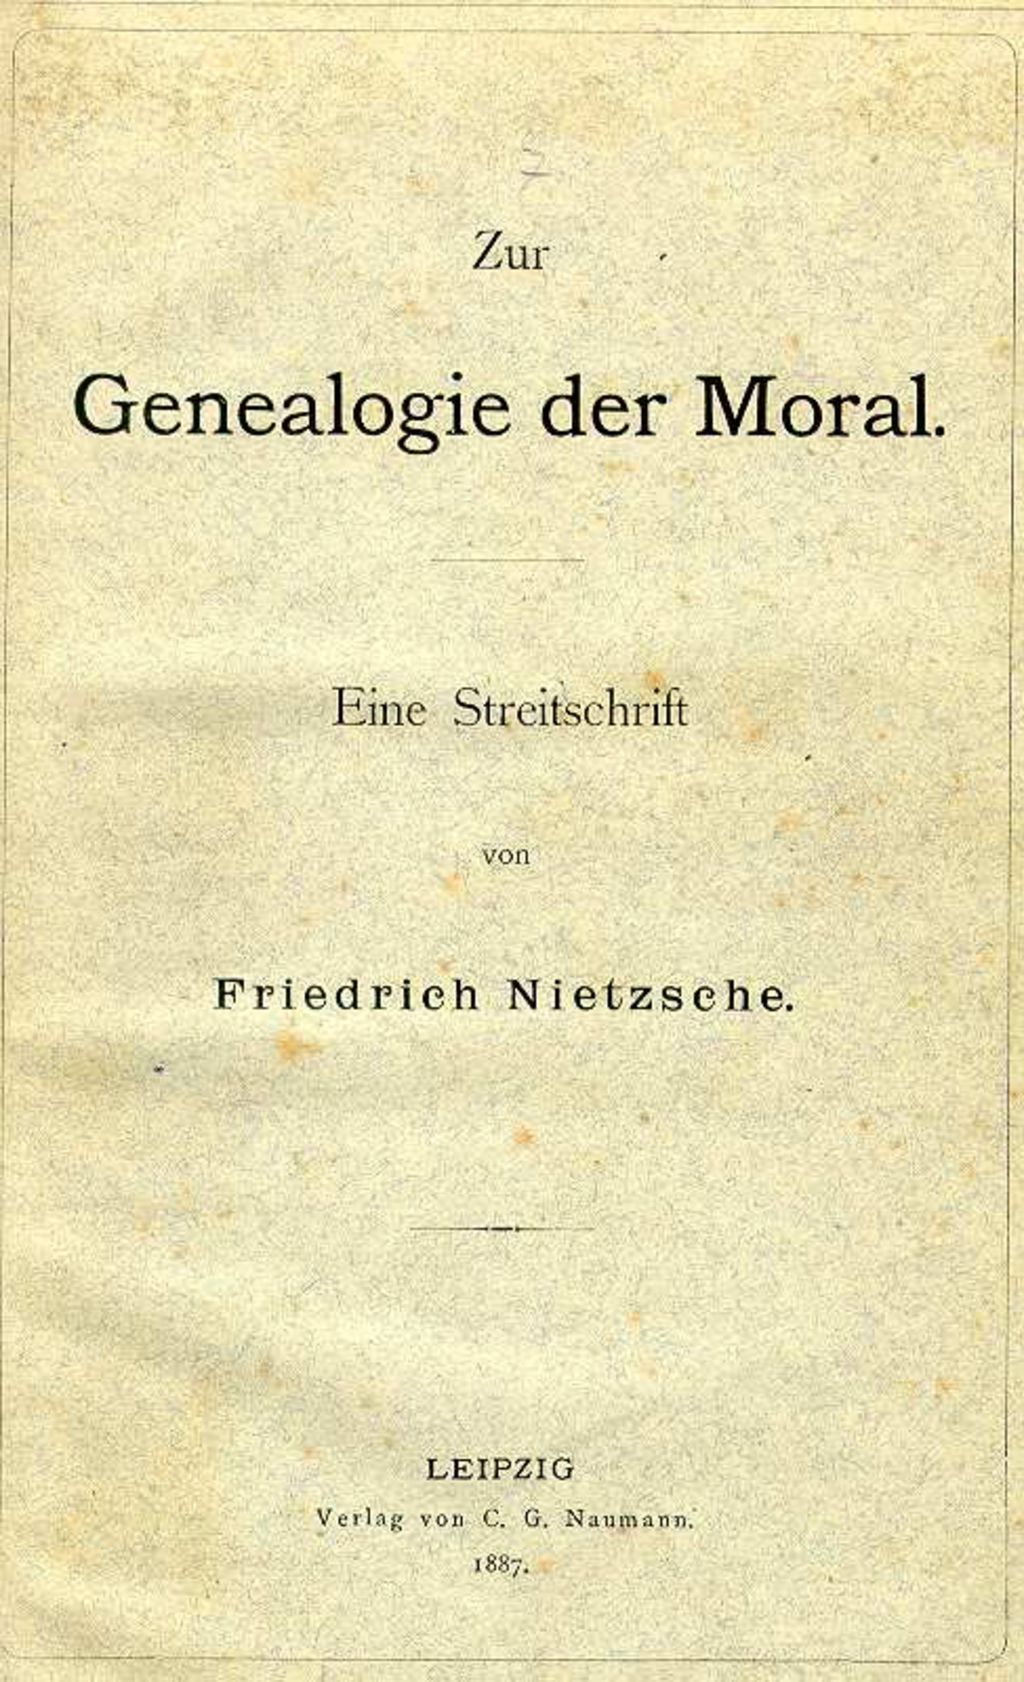 Exponat: Buch: Nietzsche, Friedrich "Zur Genealogie der Moral", 1887